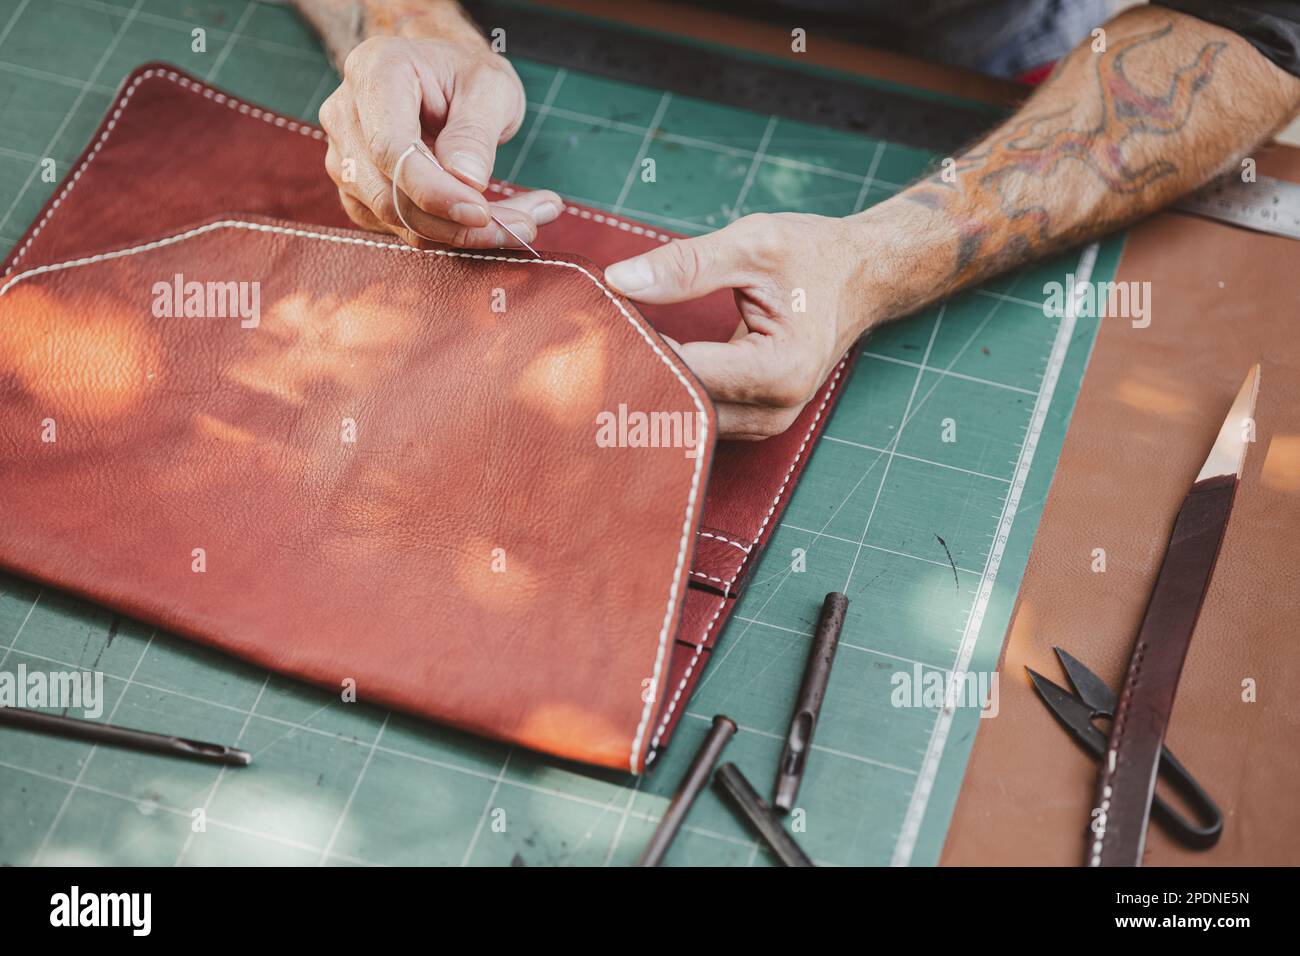 Nahthandwerker Lederhandwerker in der Lederwerkstatt. Ein Mann, der Handwerker hält und arbeitet. Er näht einen Hammer, um einen Walzer zu machen. Ta Stockfoto